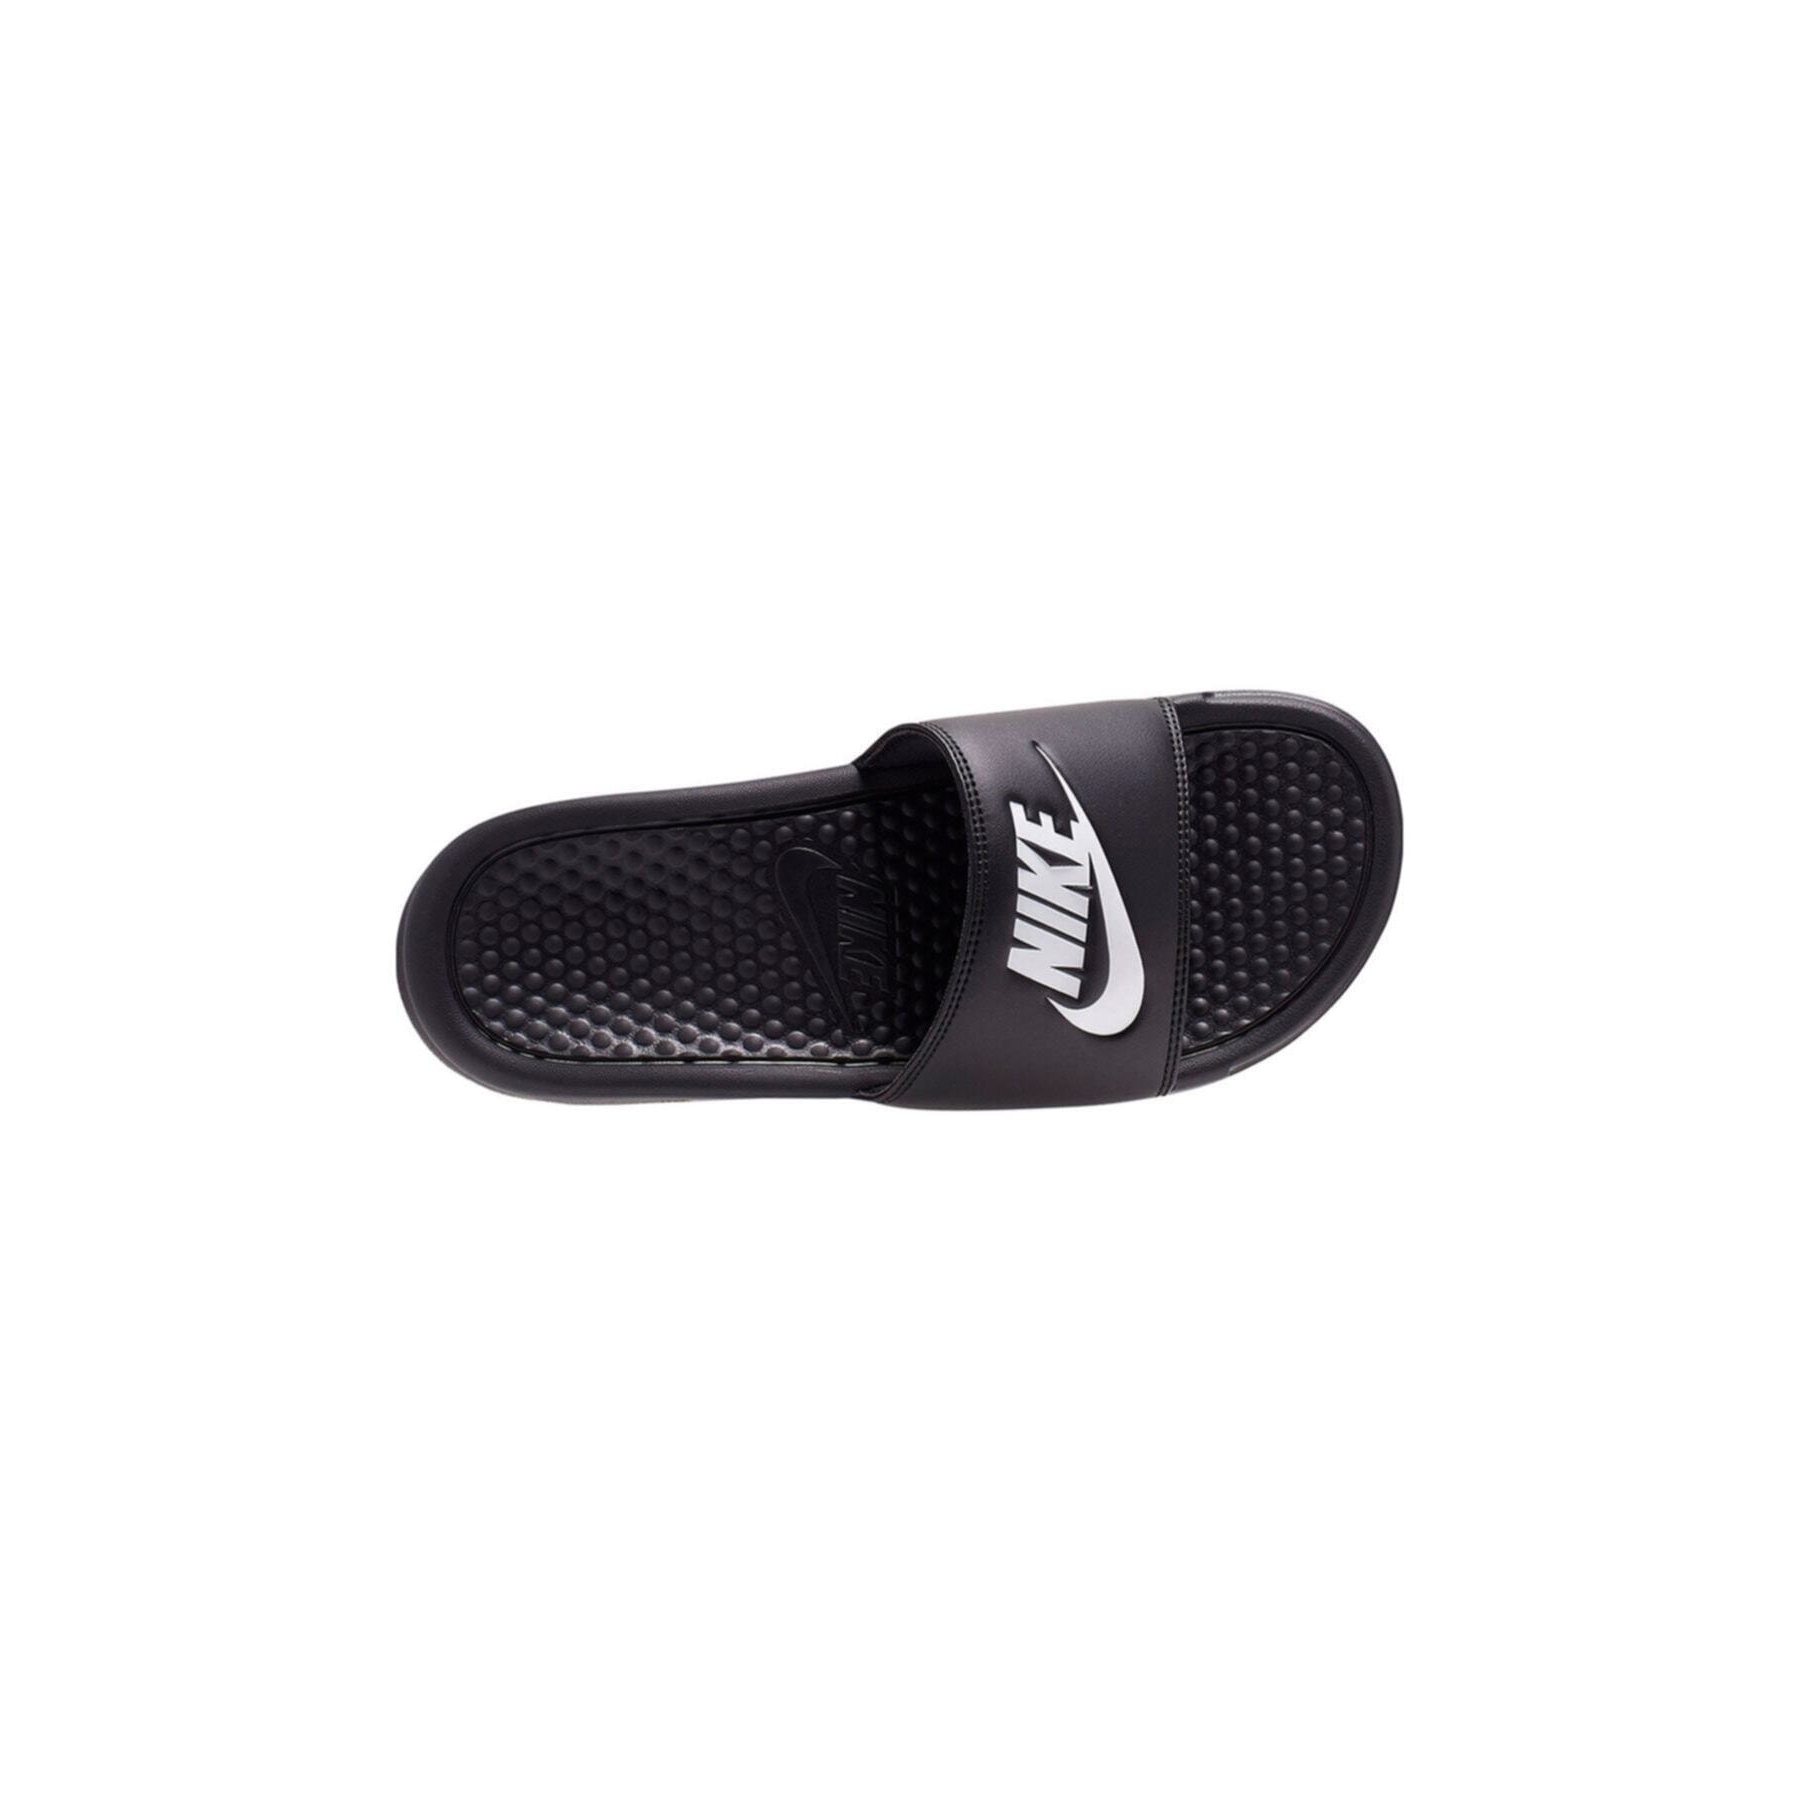 Nike Benassi Jdi Erkek Siyah Günlük Terlik (343881-015)